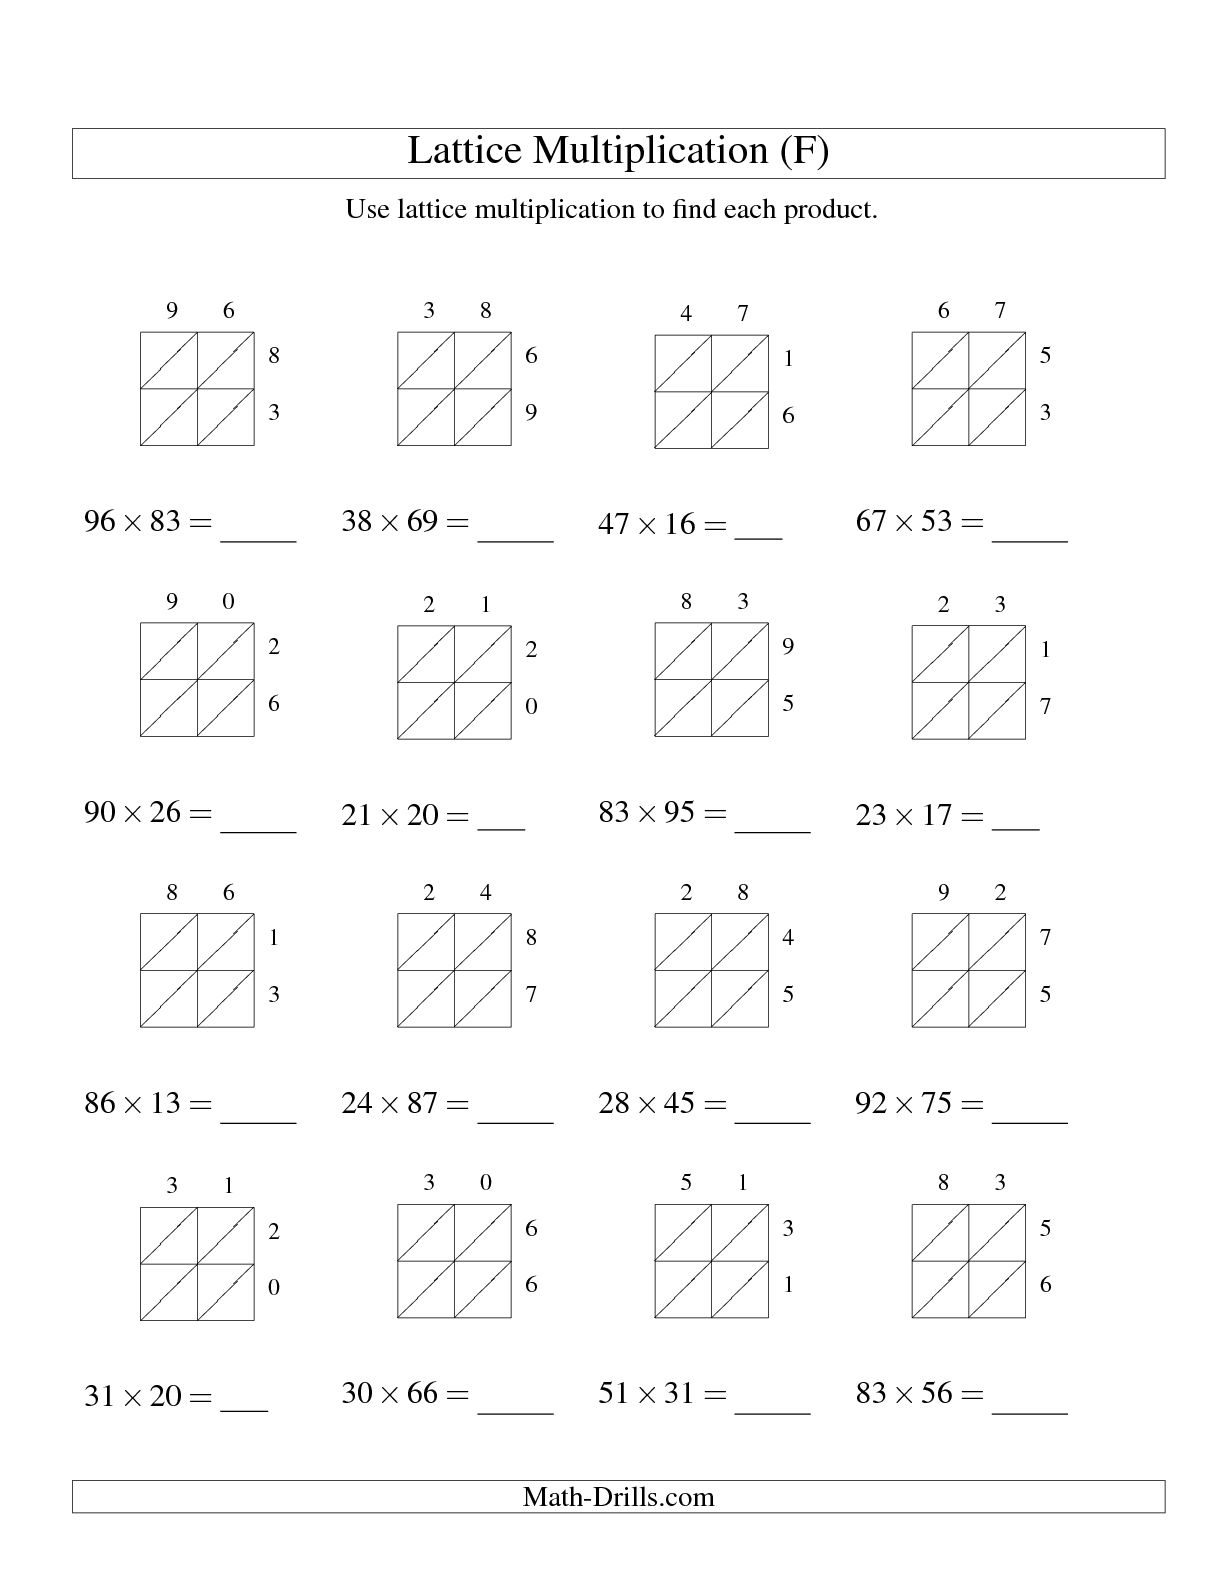 lattice-method-of-multiplication-worksheets-with-decimal-numbers-lattice-method-decimals